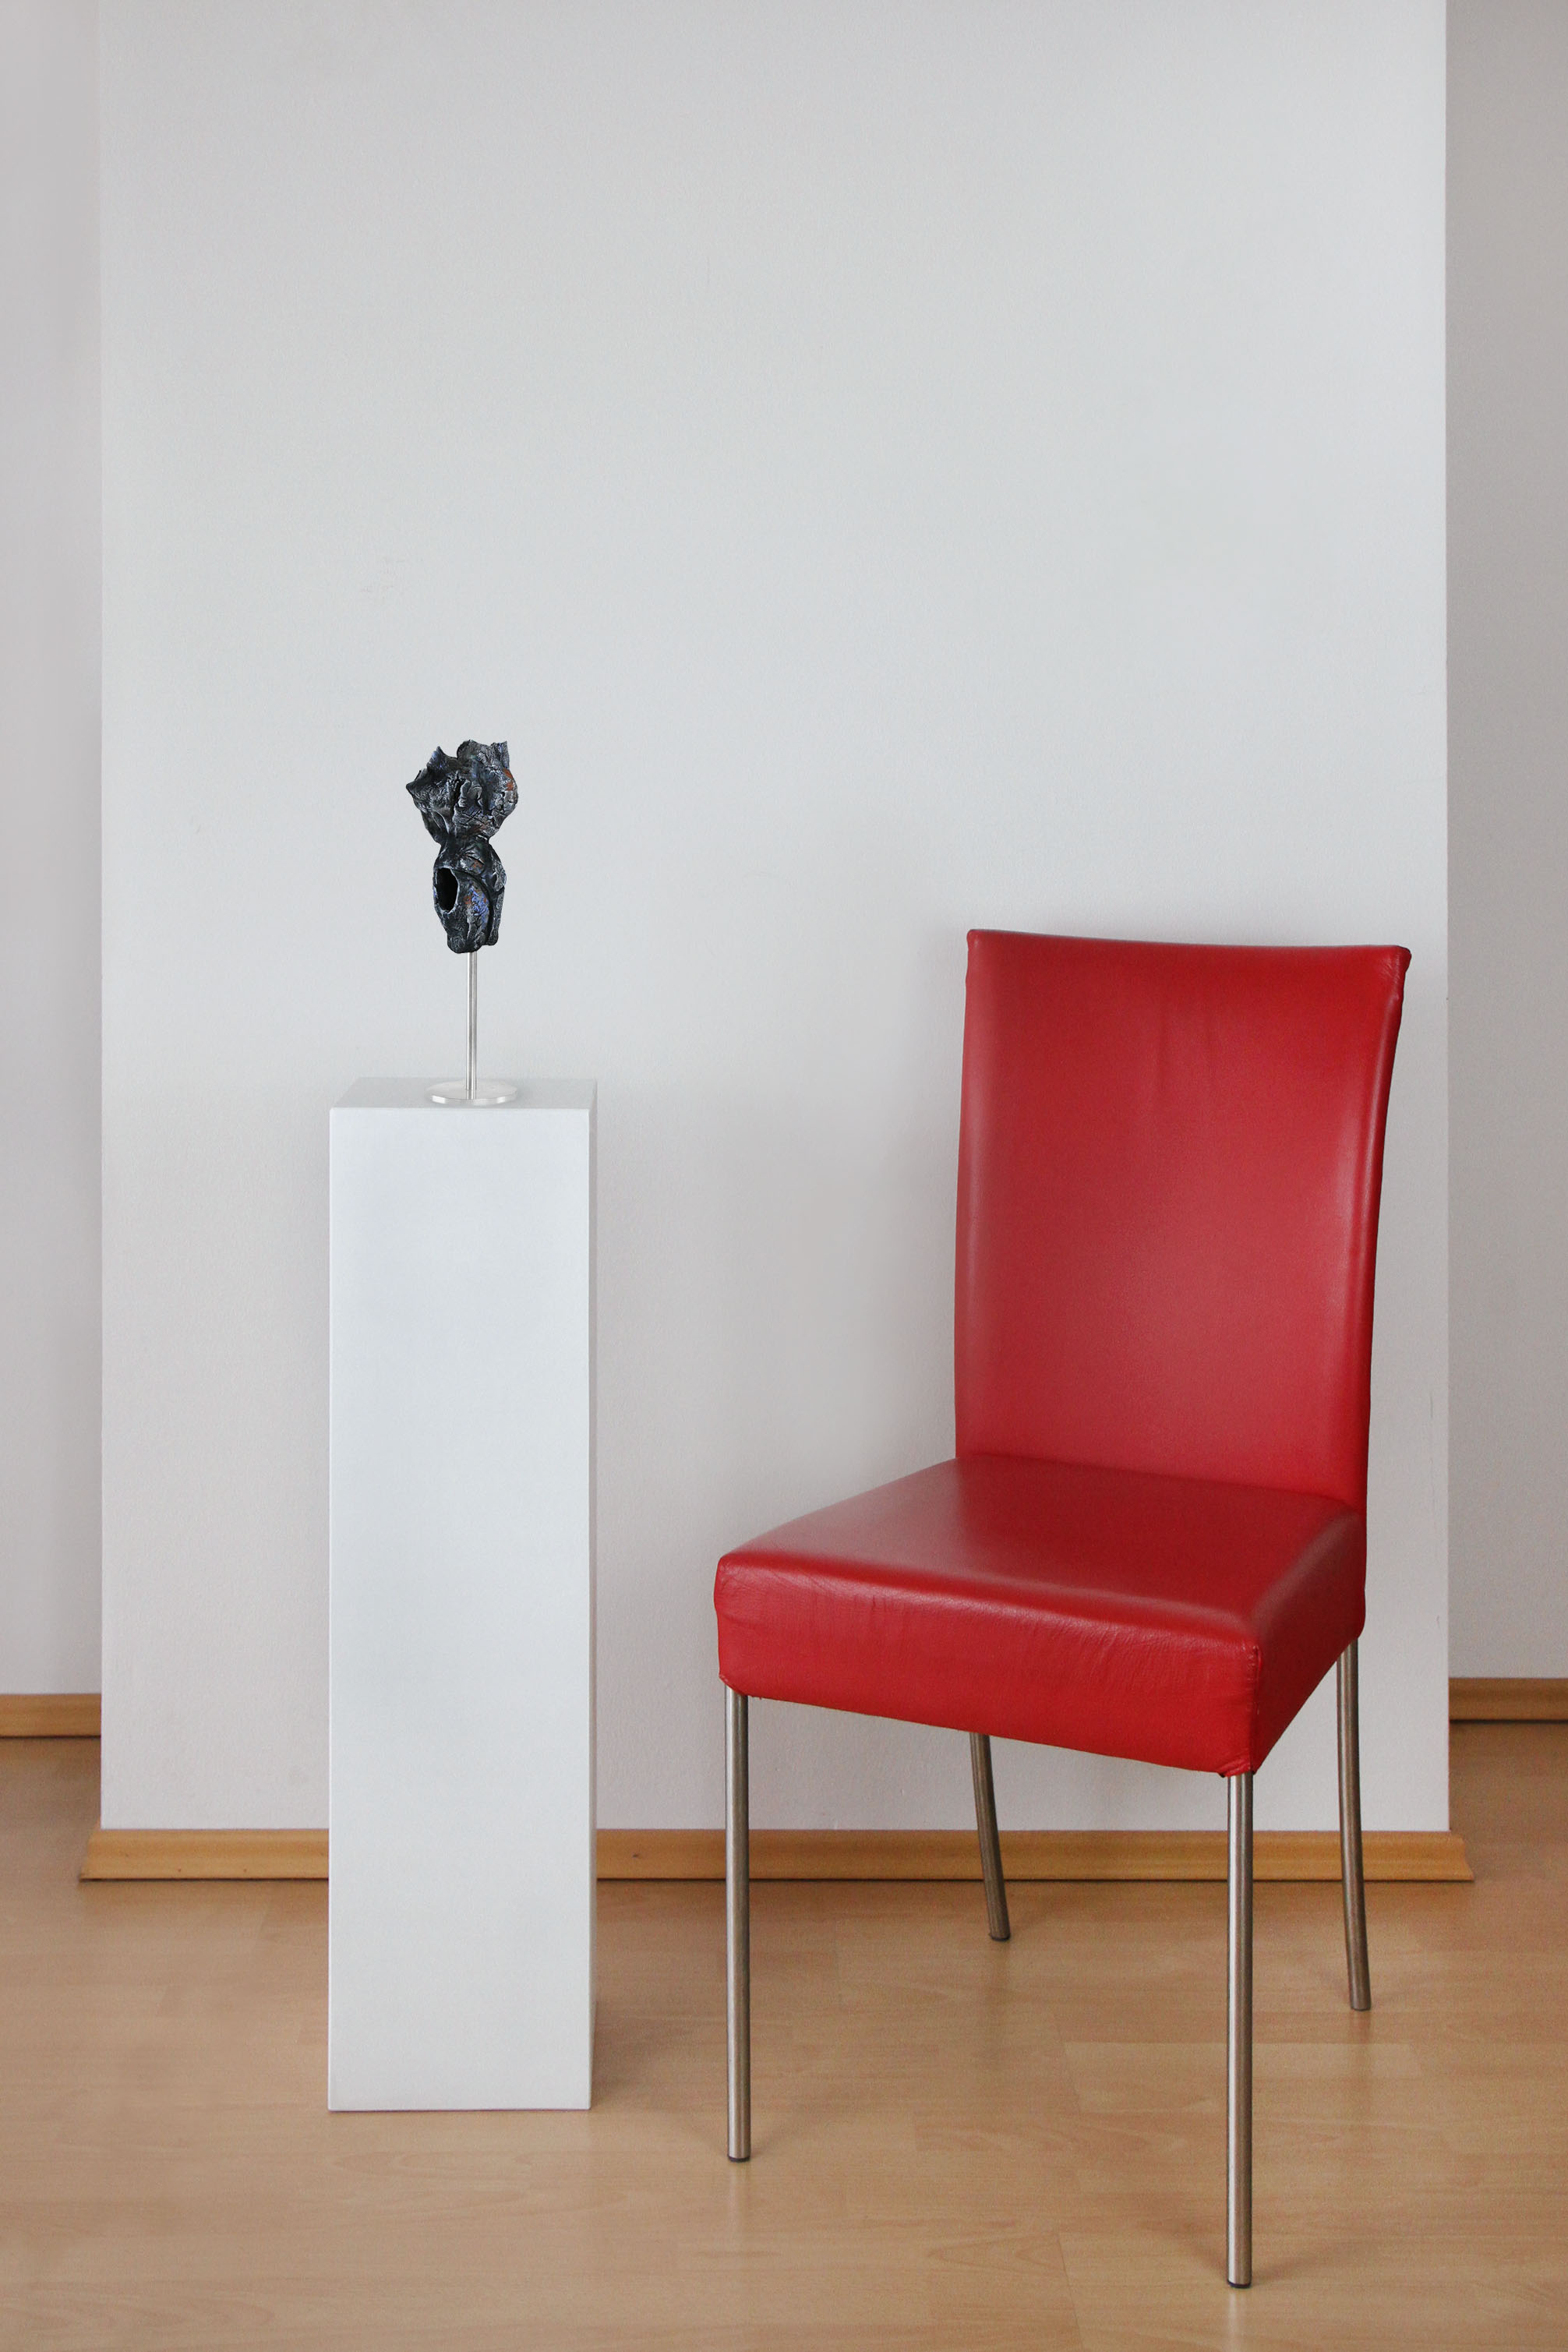 Zeitgenössische Skulptur, Ilona Schmidt: "Torso II" (A)